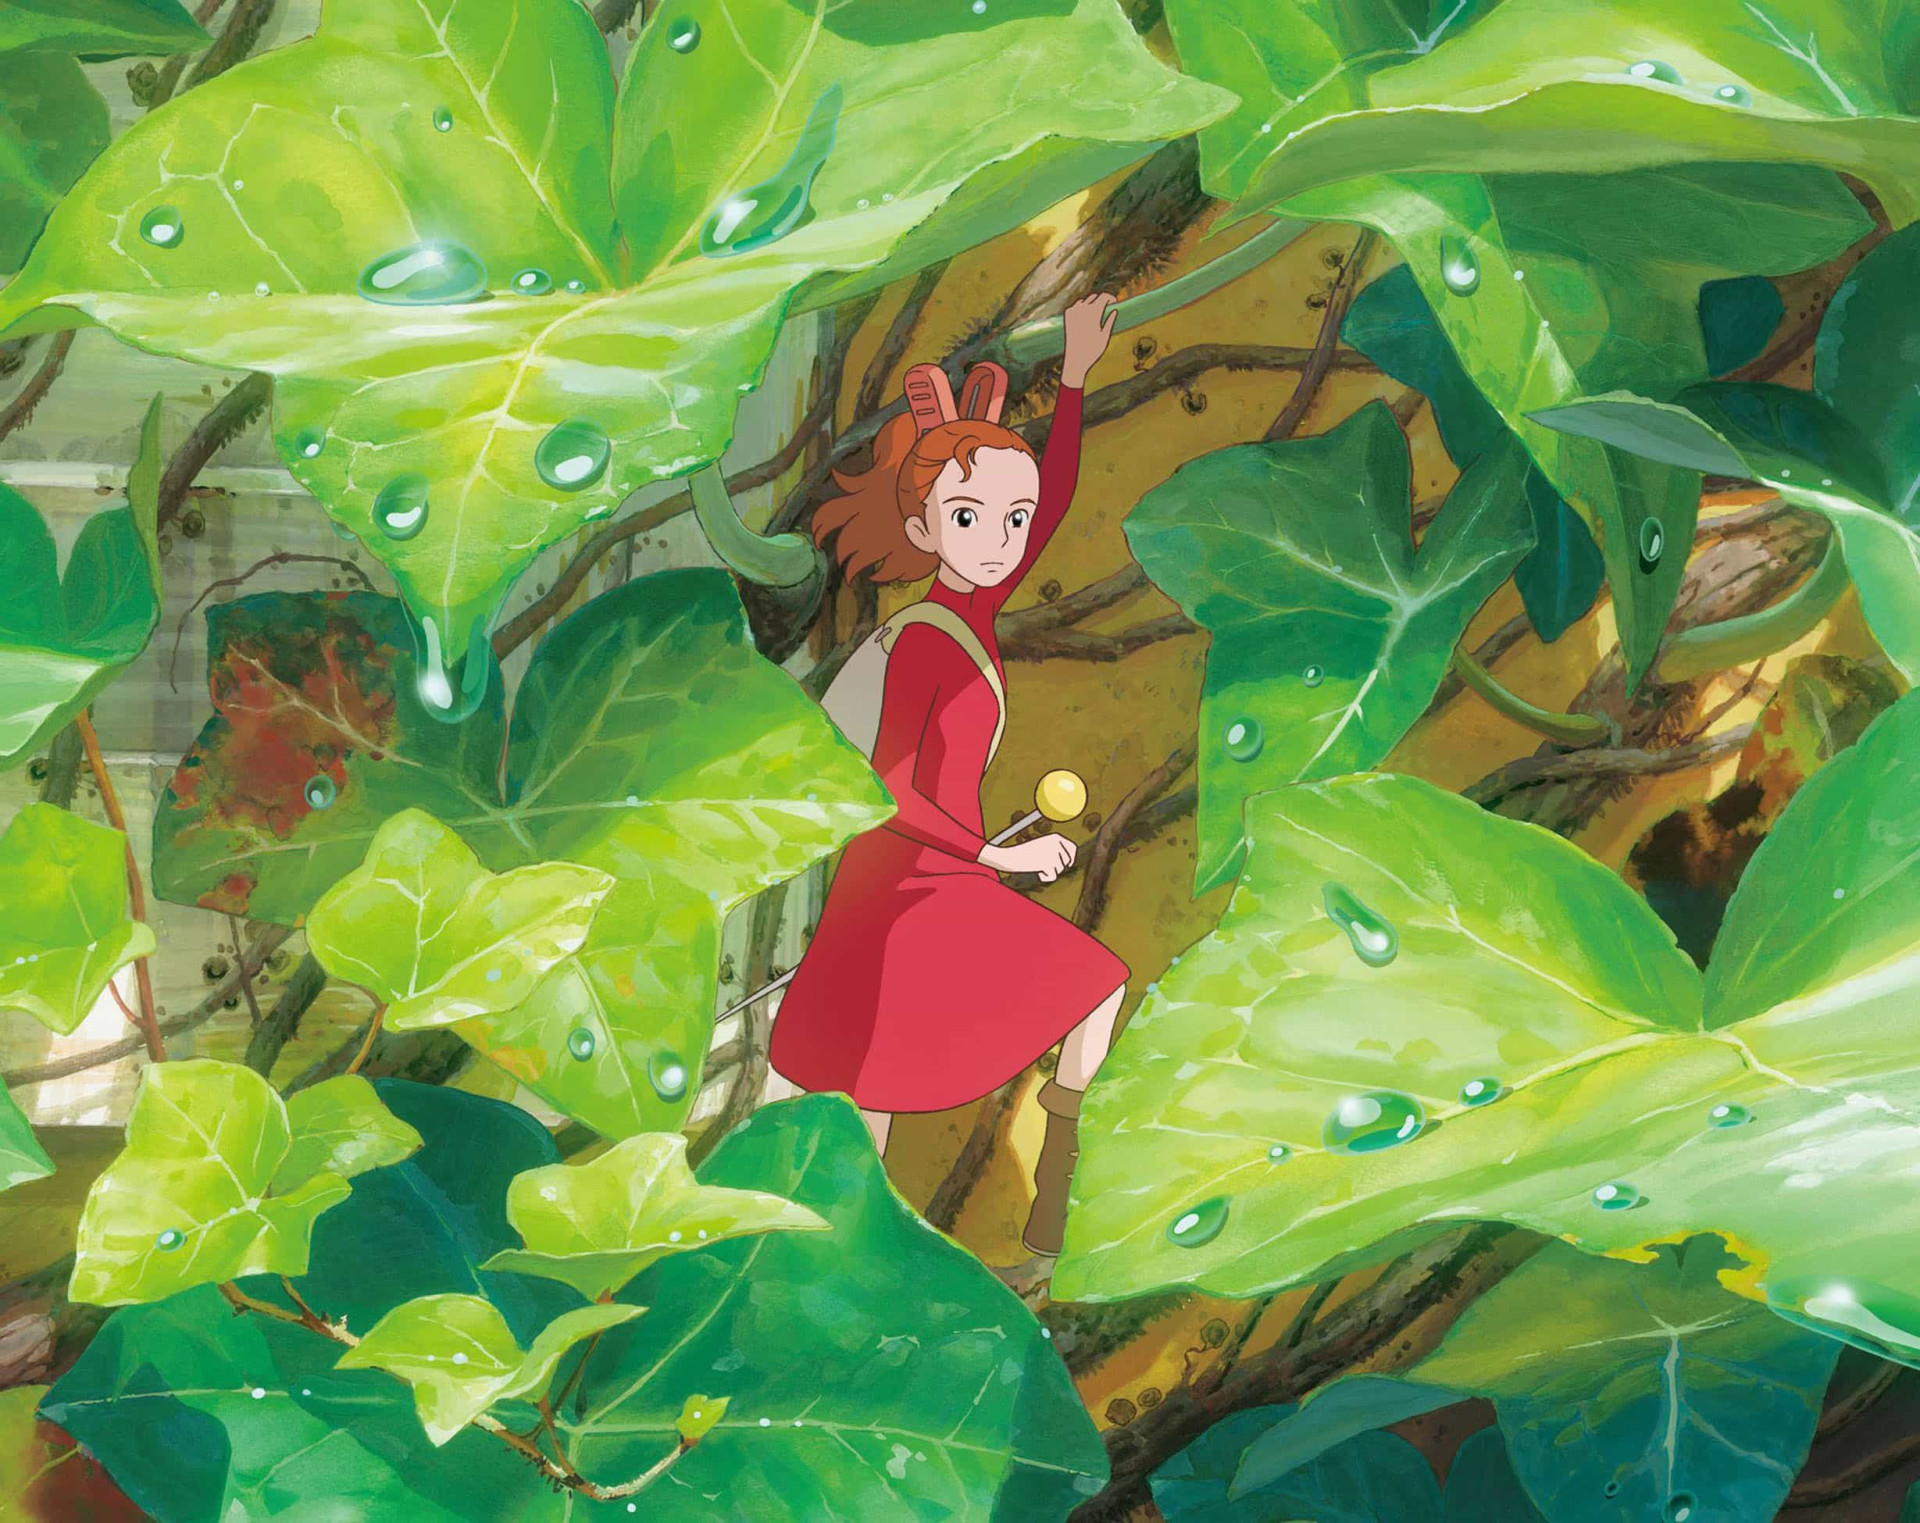 <p>"Arrietty : Le Petit Monde des Chapardeurs" , dont le scénario a été écrit par Miyazaki, a été réalisé par Hiromasa Yonebayashi, qui est devenu le plus jeune réalisateur du Studio Ghibli à l'âge de 37 ans. La sortie en langue anglaise a marqué les débuts officiels au cinéma de Tom Holland, qui a donné sa voix à un personnage principal.</p><p><a href="https://www.msn.com/fr-fr/community/channel/vid-7xx8mnucu55yw63we9va2gwr7uihbxwc68fxqp25x6tg4ftibpra?cvid=94631541bc0f4f89bfd59158d696ad7e">Suivez-nous et accédez tous les jours à du contenu exclusif</a></p>